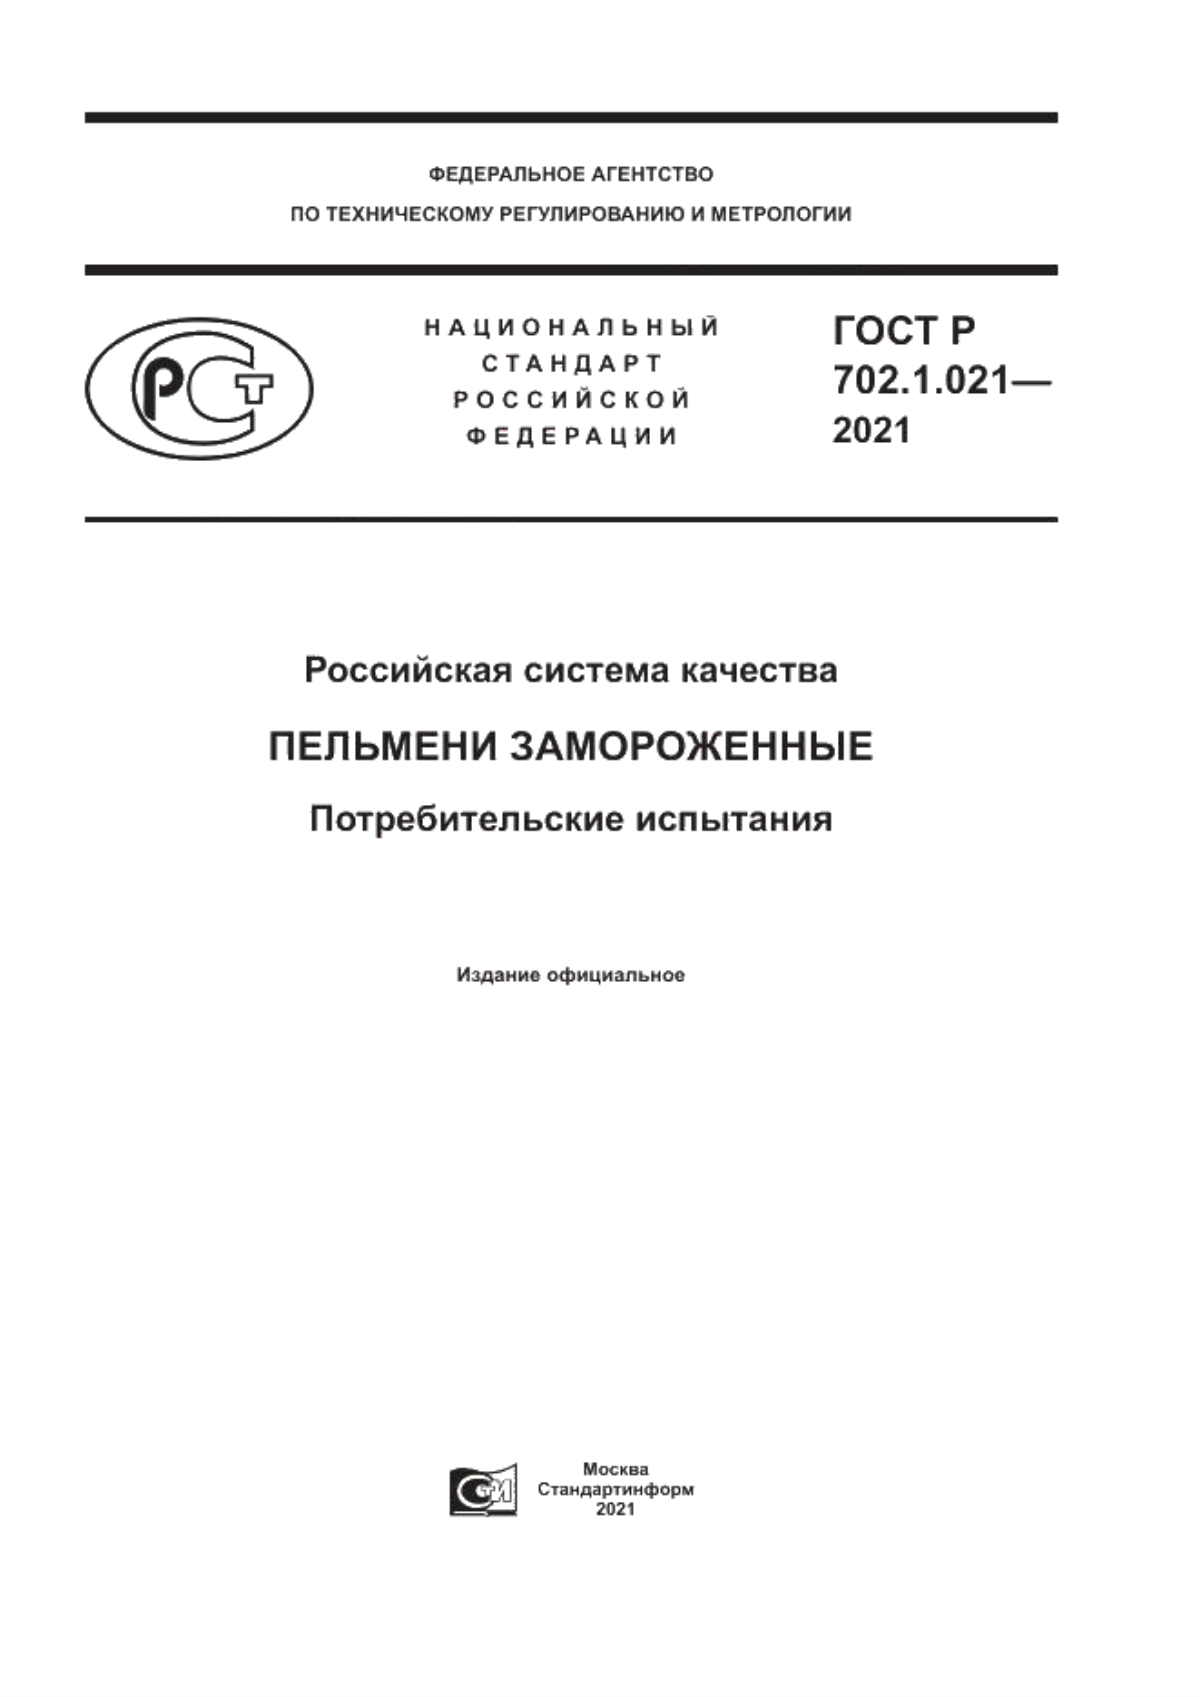 ГОСТ Р 702.1.021-2021 Российская система качества. Пельмени замороженные. Потребительские испытания